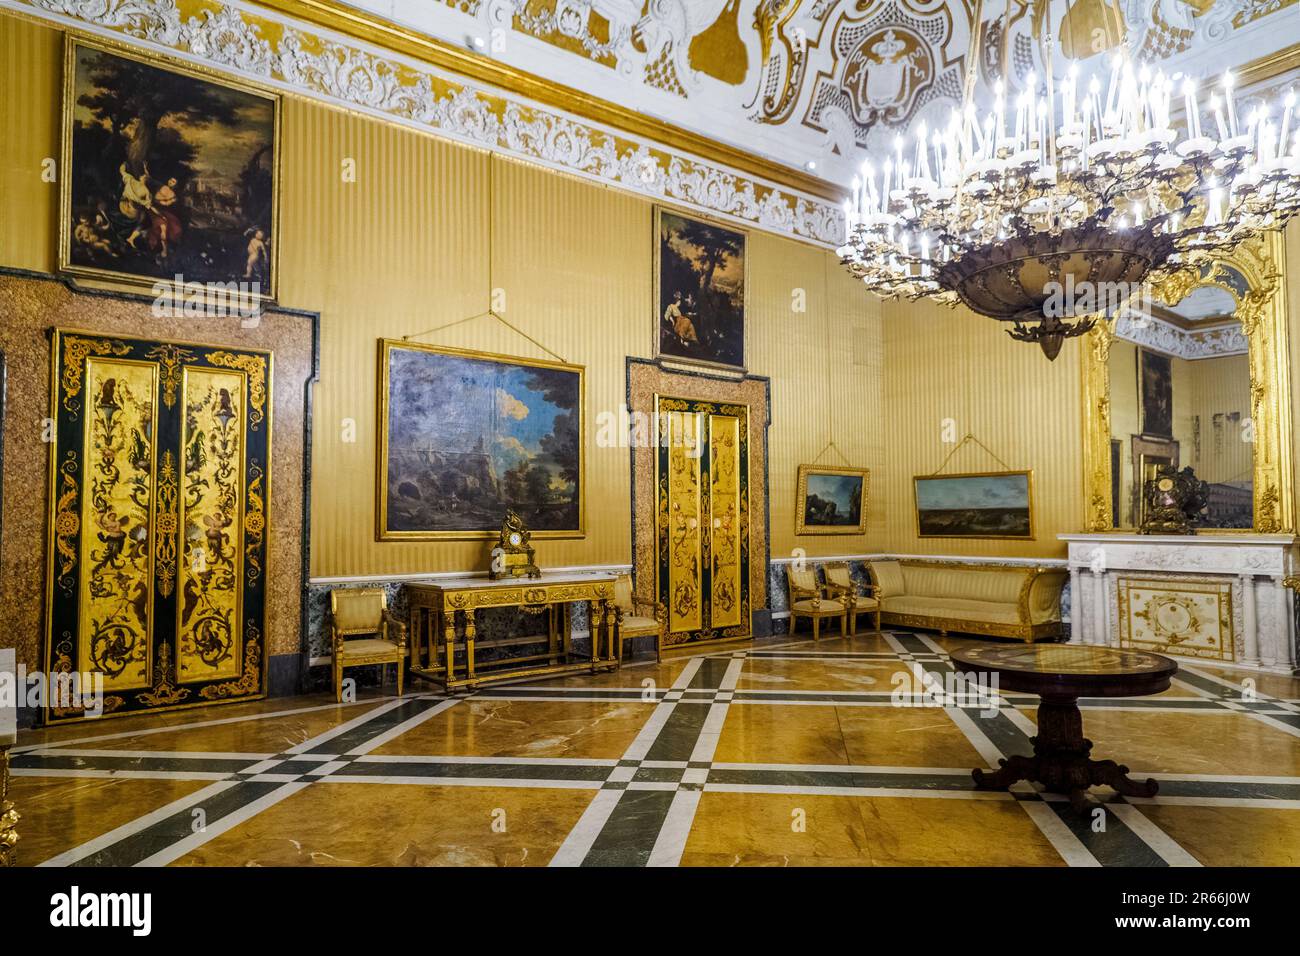 Das Zimmer der Königin mit seiner seltenen Rokoko-weißen und goldenen Stuckdecke und Gemälden der Neapolitans School aus dem 17. Bis 18. Jahrhundert - Königlicher Palast von Neapel, der 1734 zur königlichen Residenz der Bourbons wurde - Neapel, Italien Stockfoto